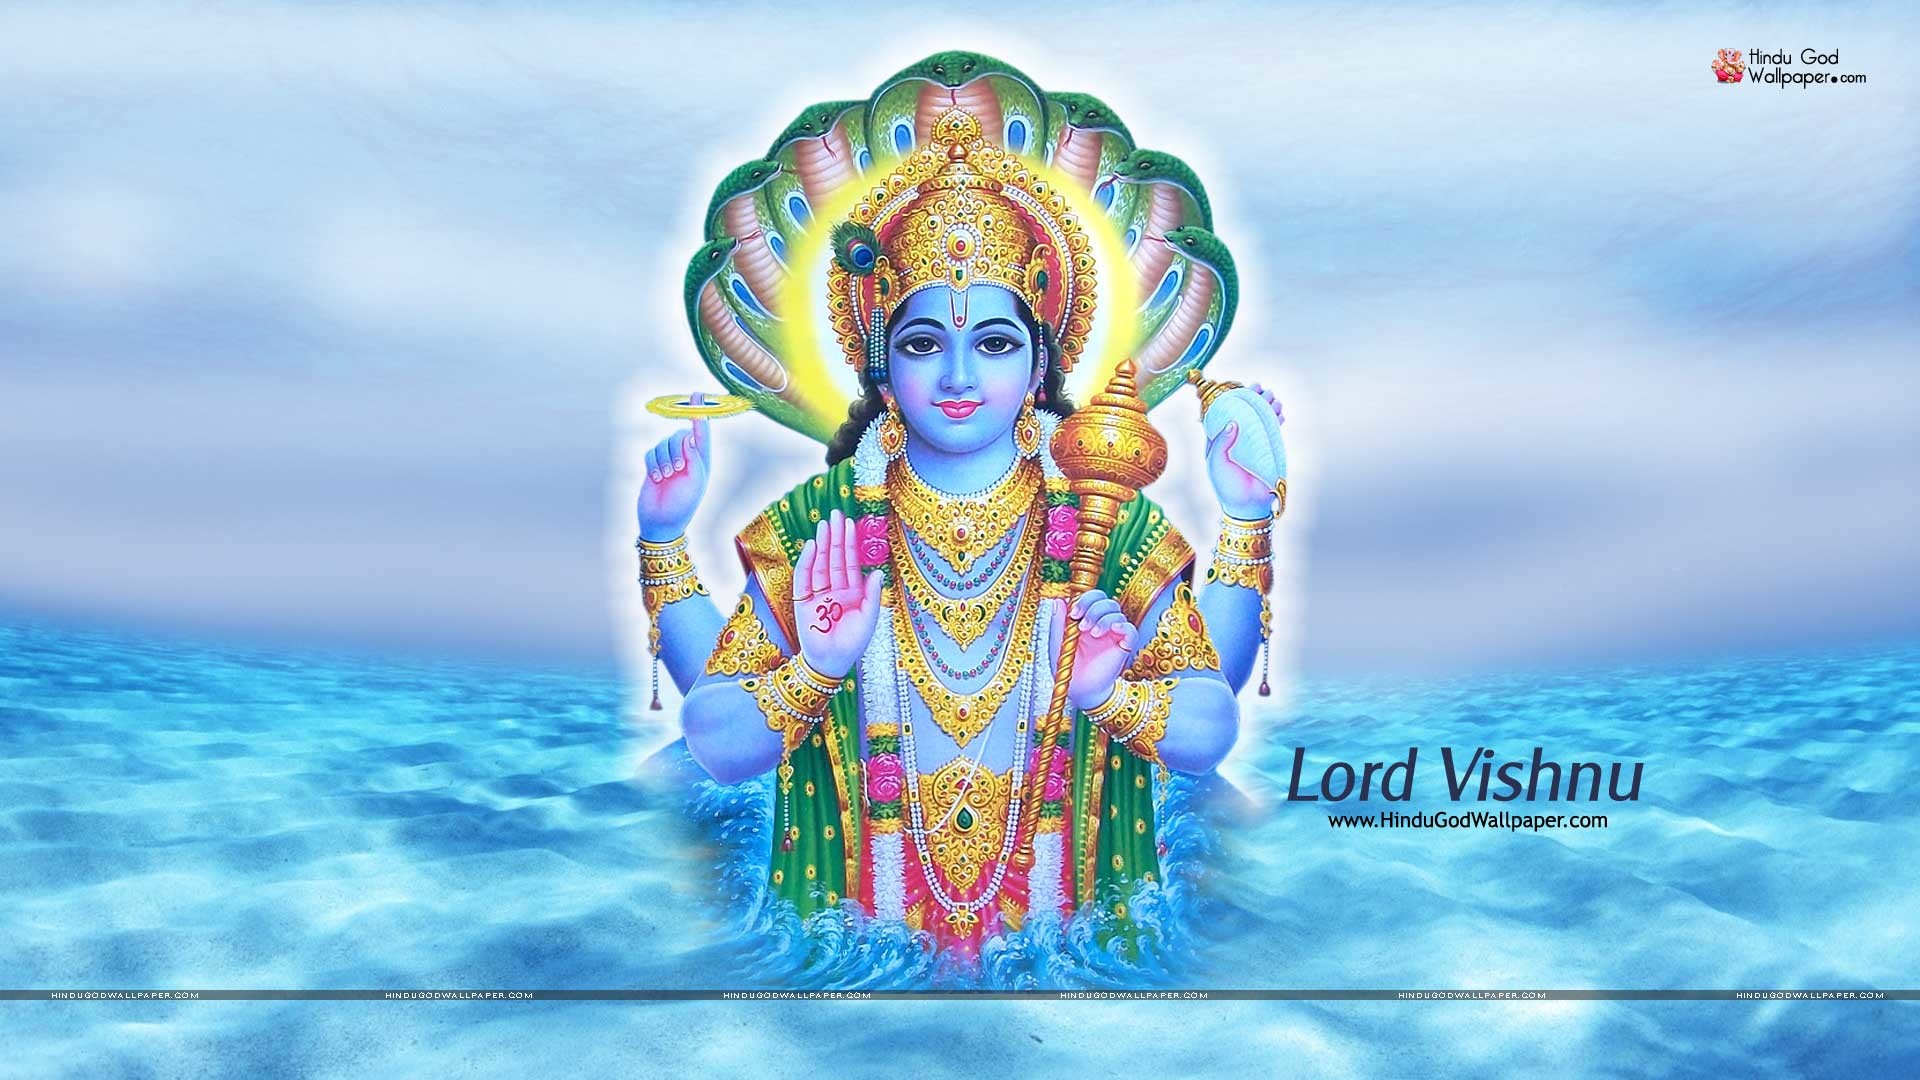 Lord Vishnu Wallpaper Full Size 1920x1080